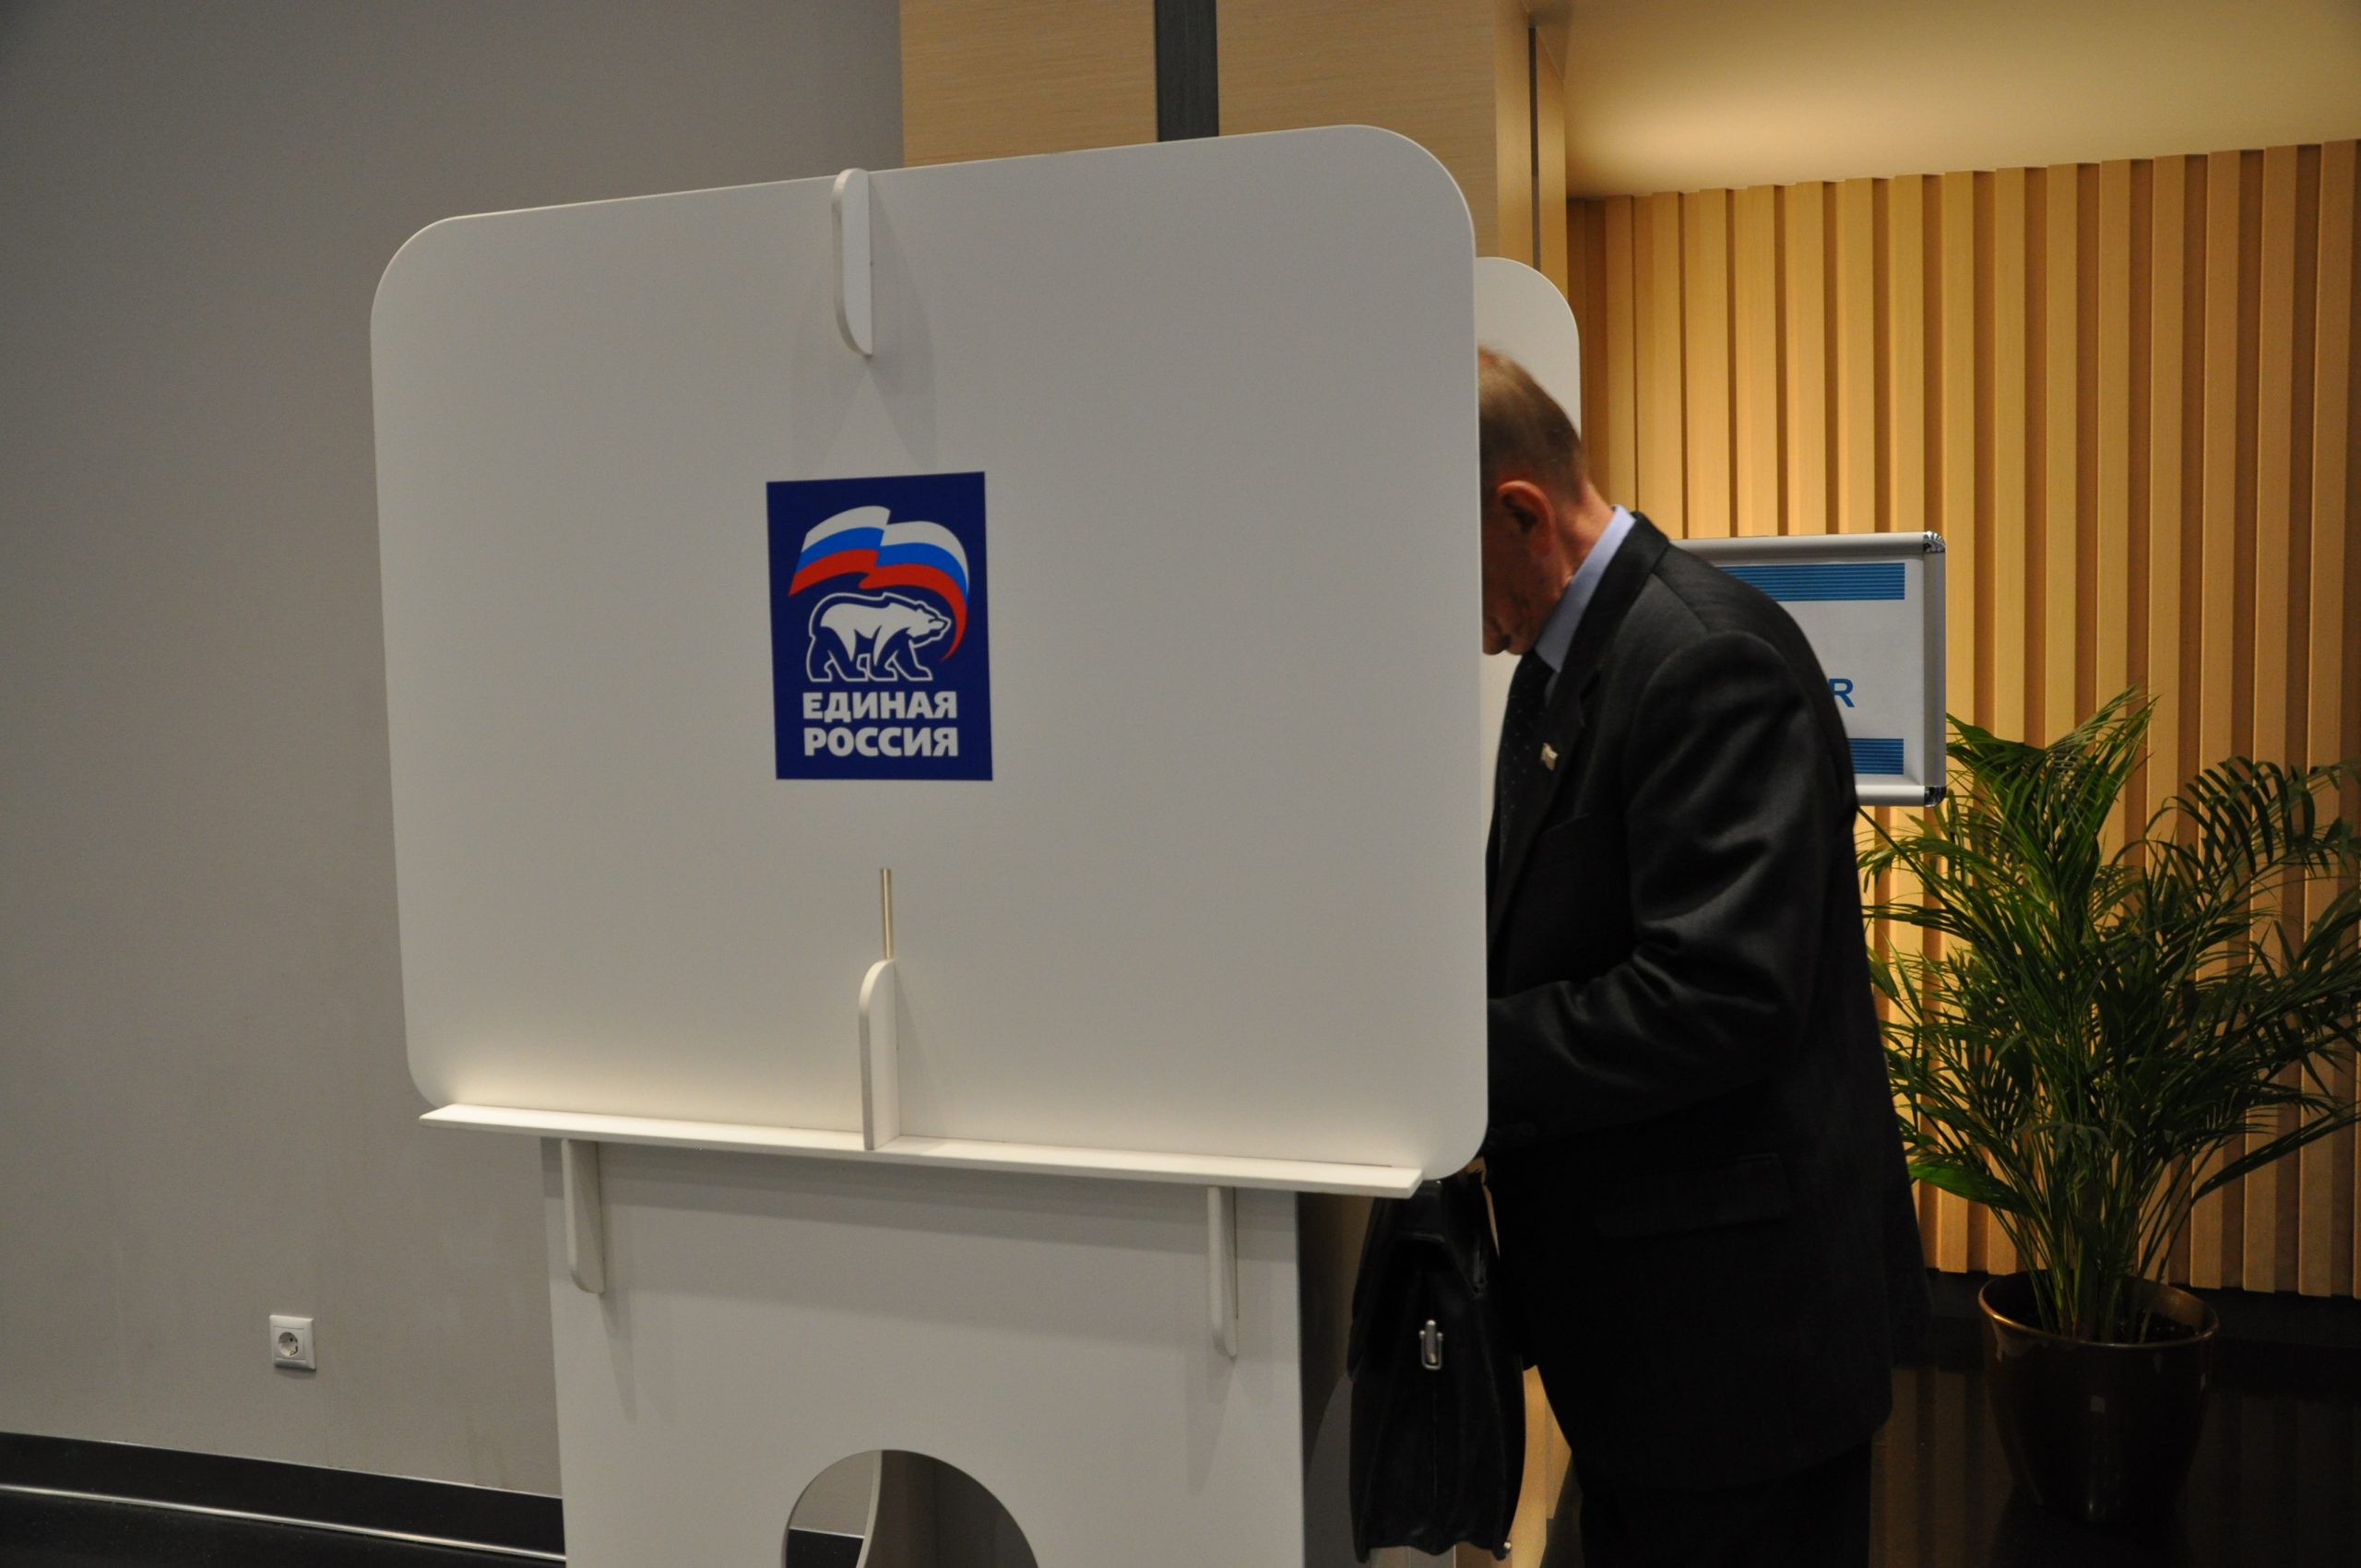 Партия «Единая Россия» проведет широкое обсуждение предвыборной программы с жителями регионов и экспертами